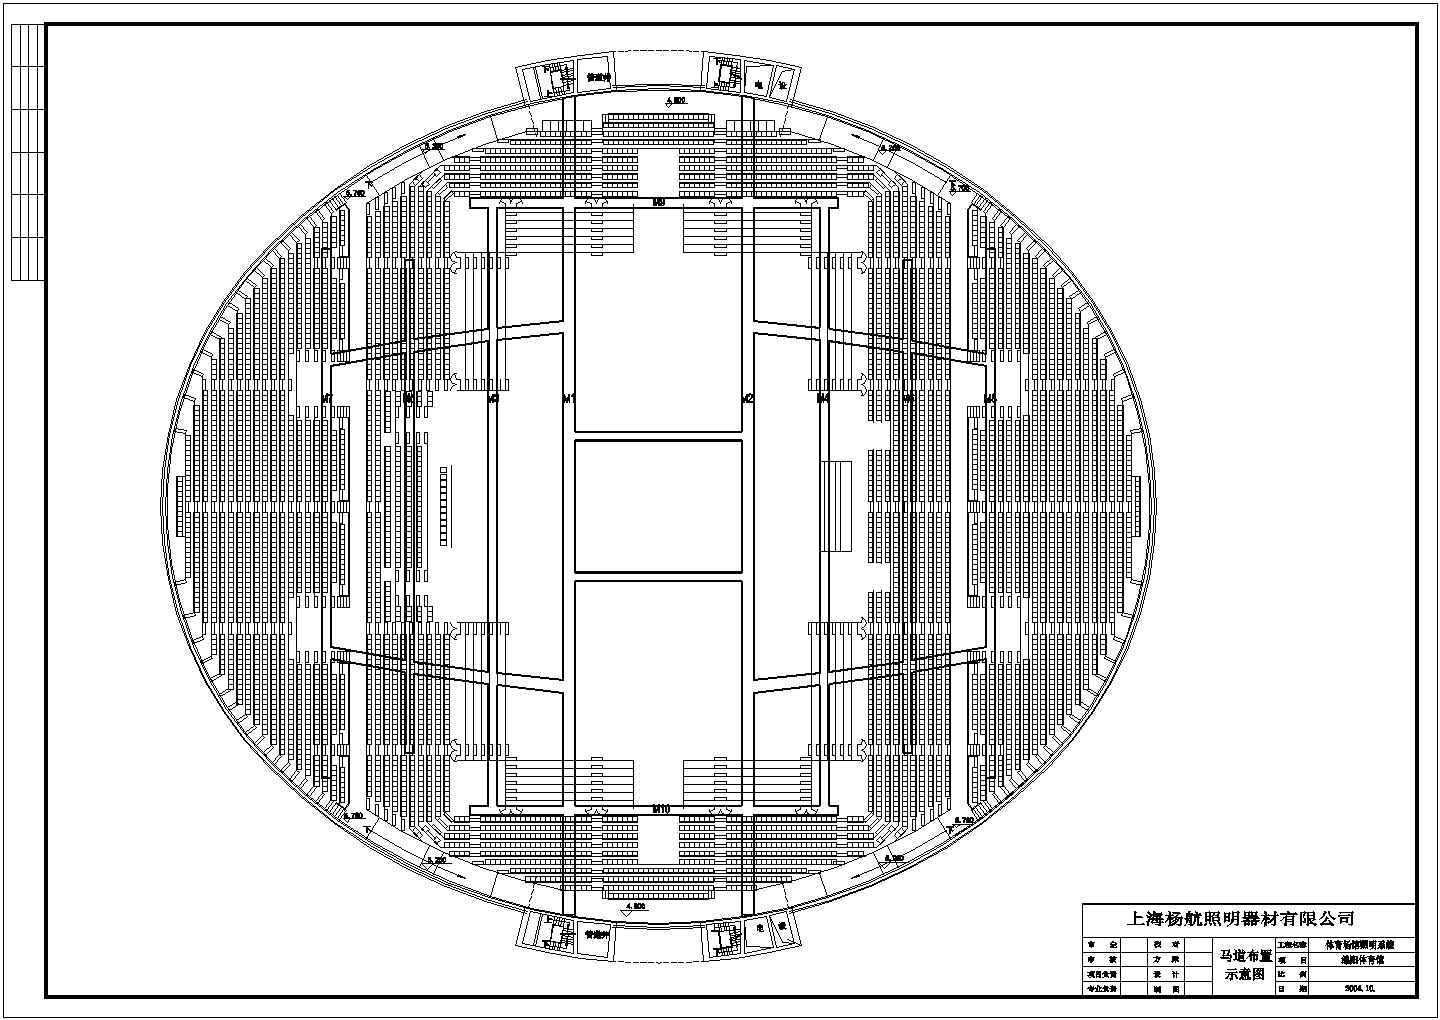 绵阳市体育馆比赛场地灯光控制设计图纸